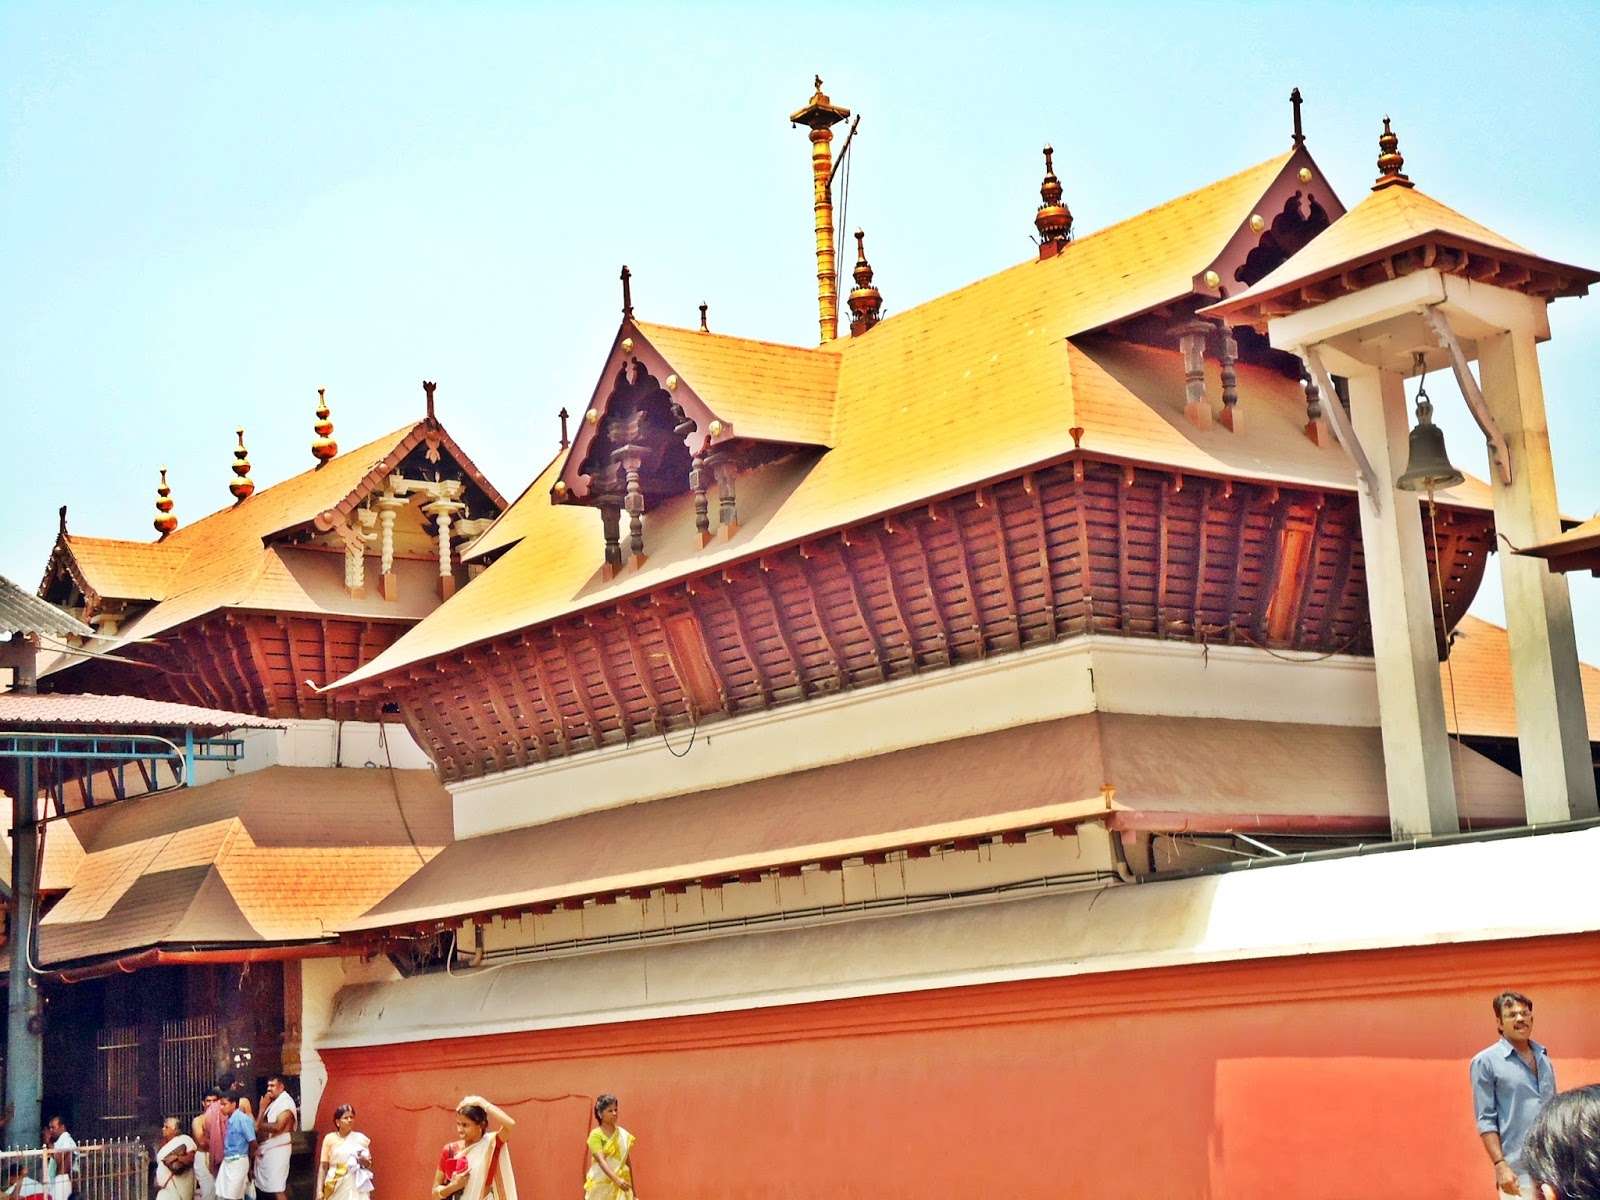 भारतमा एक मन्दिरको सम्पत्ति : १७ सय करोड भारु बैंकमा, २ सय ६३ किलो सुन